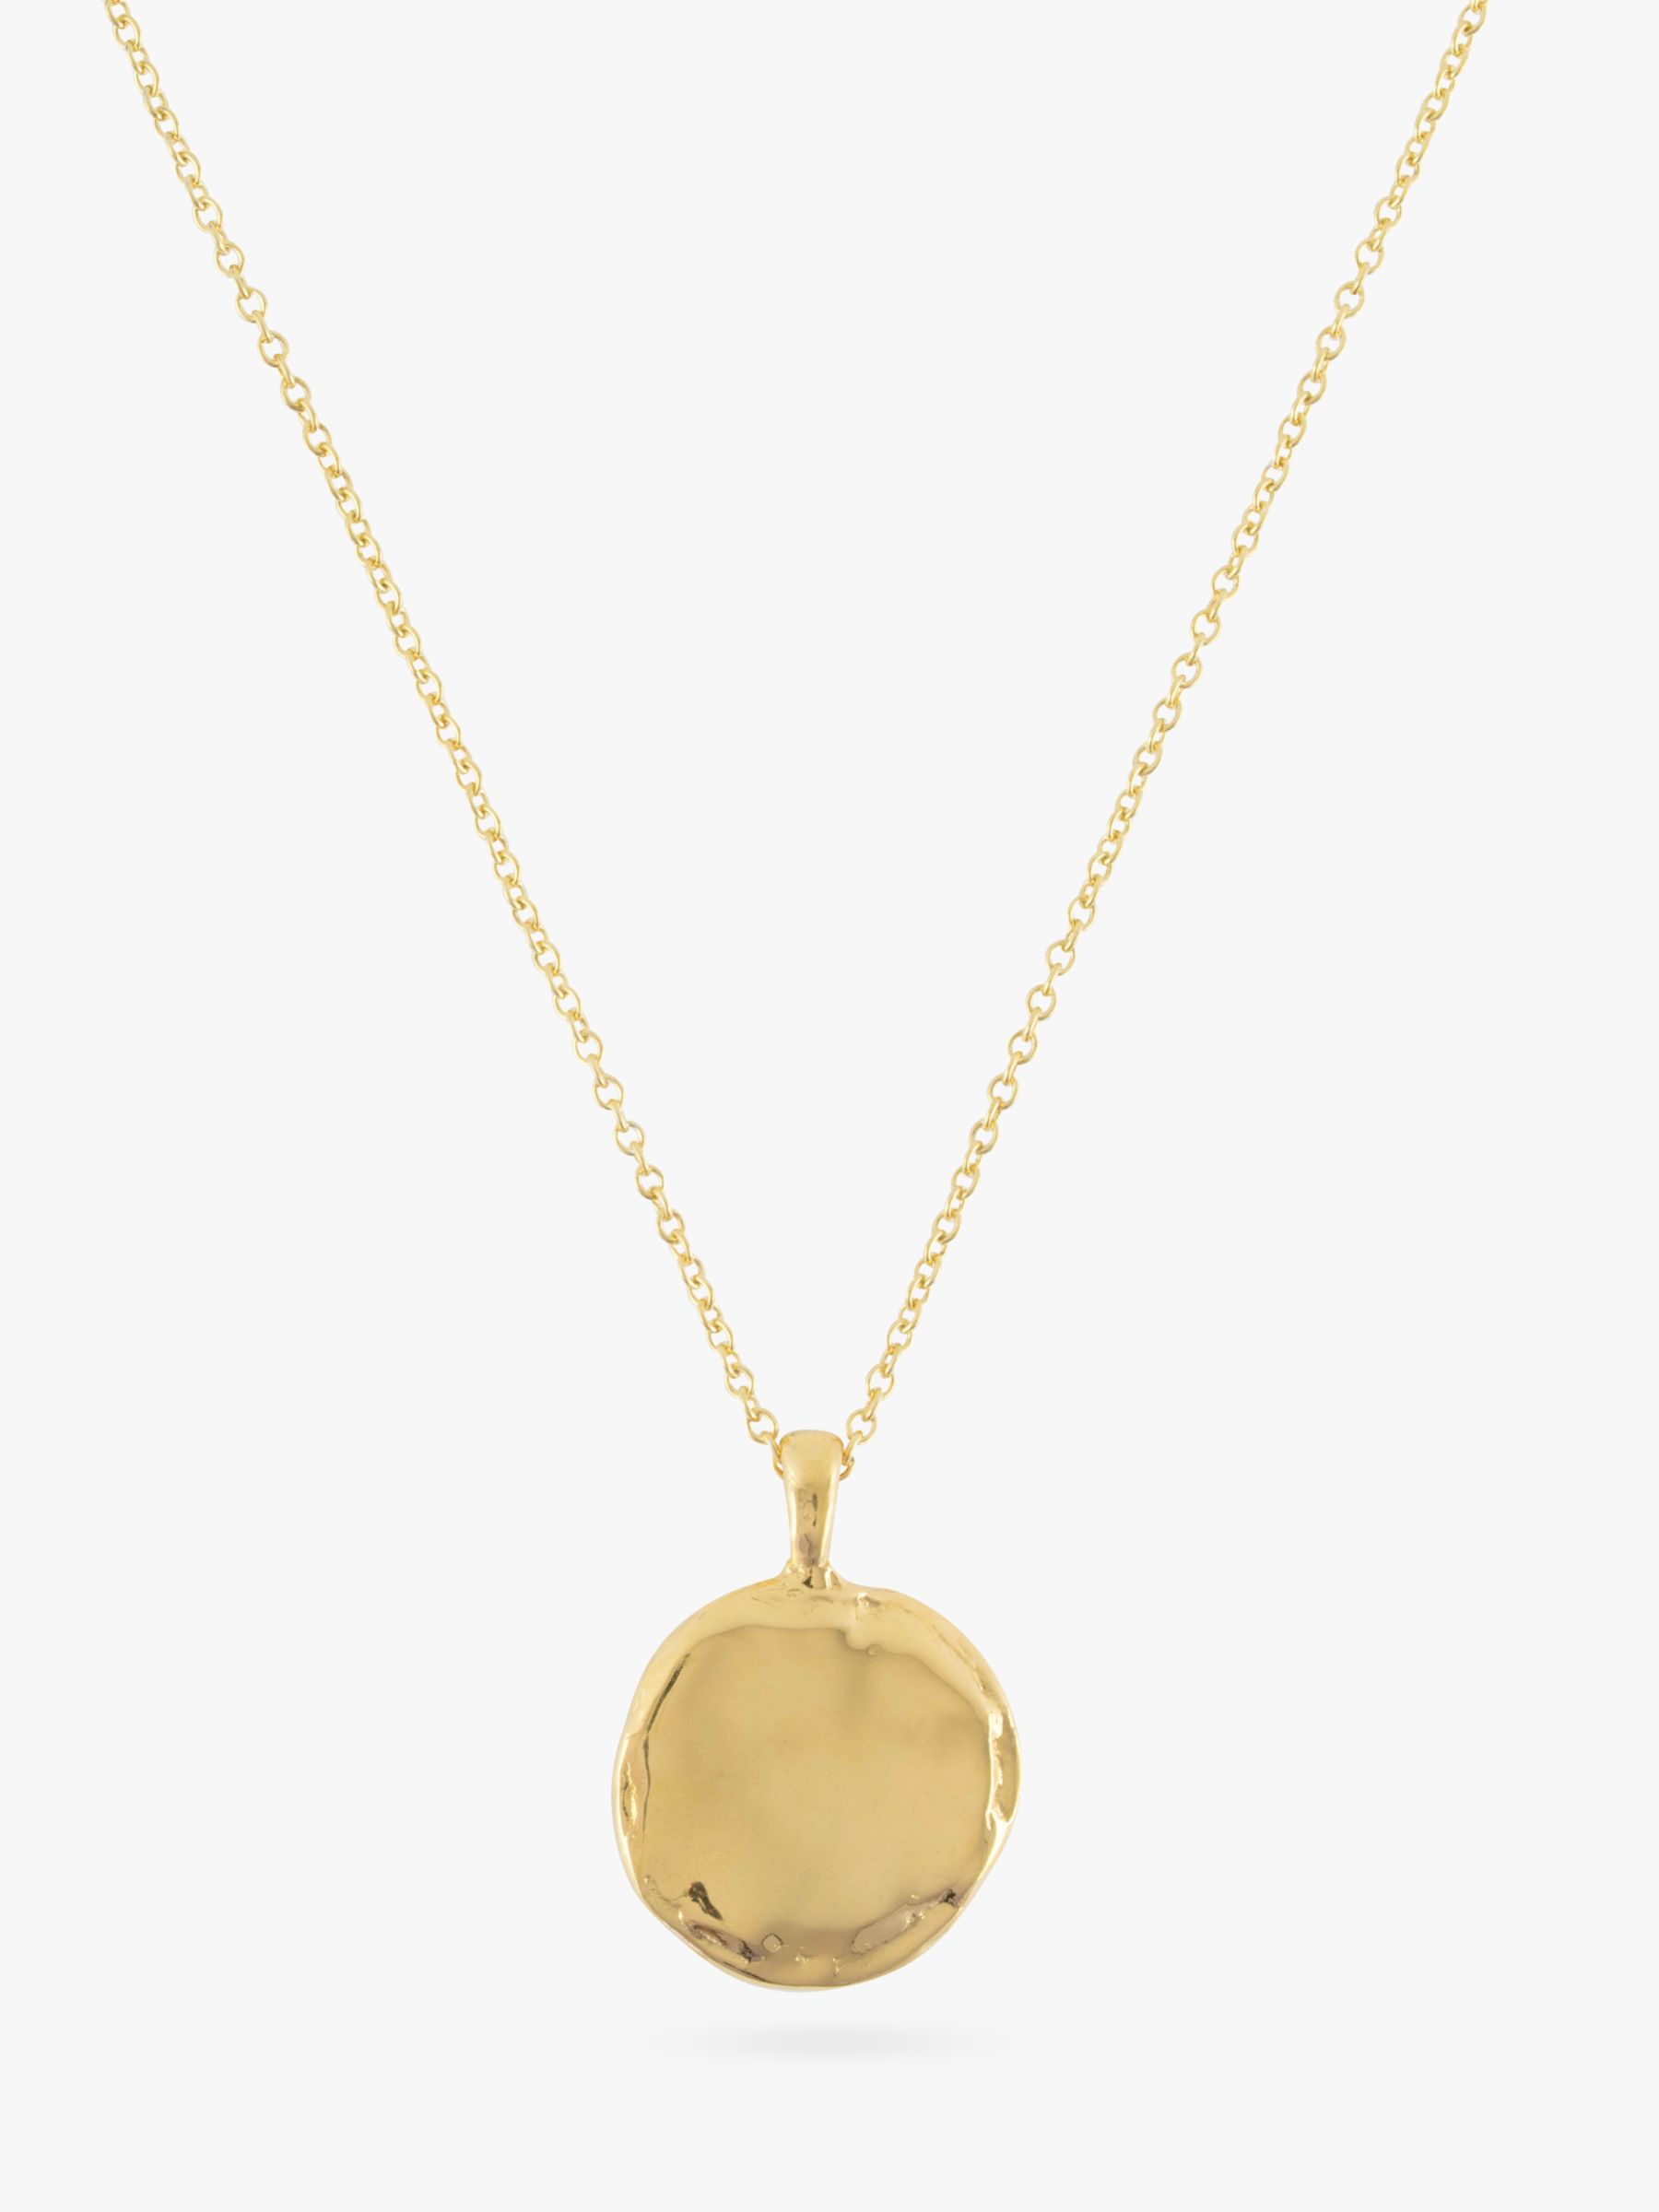 Deborah Blyth Verity Pendant Necklace, Gold